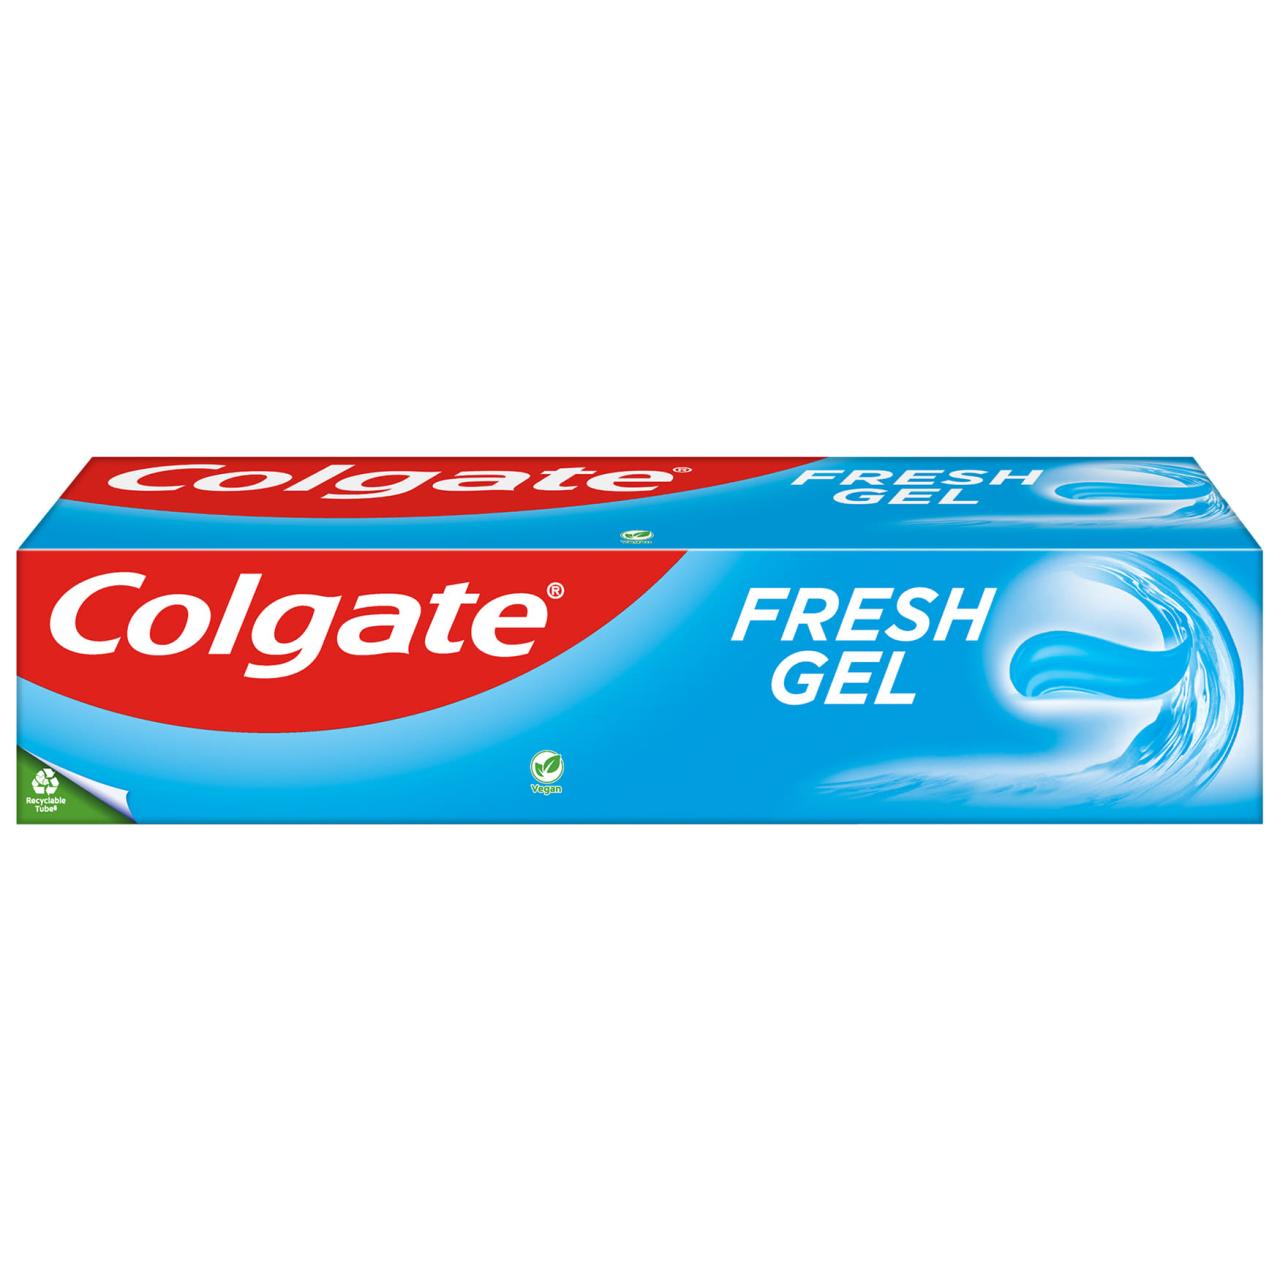 Colgate Tandpasta/Zahnpasta Fresh Gel 75ml